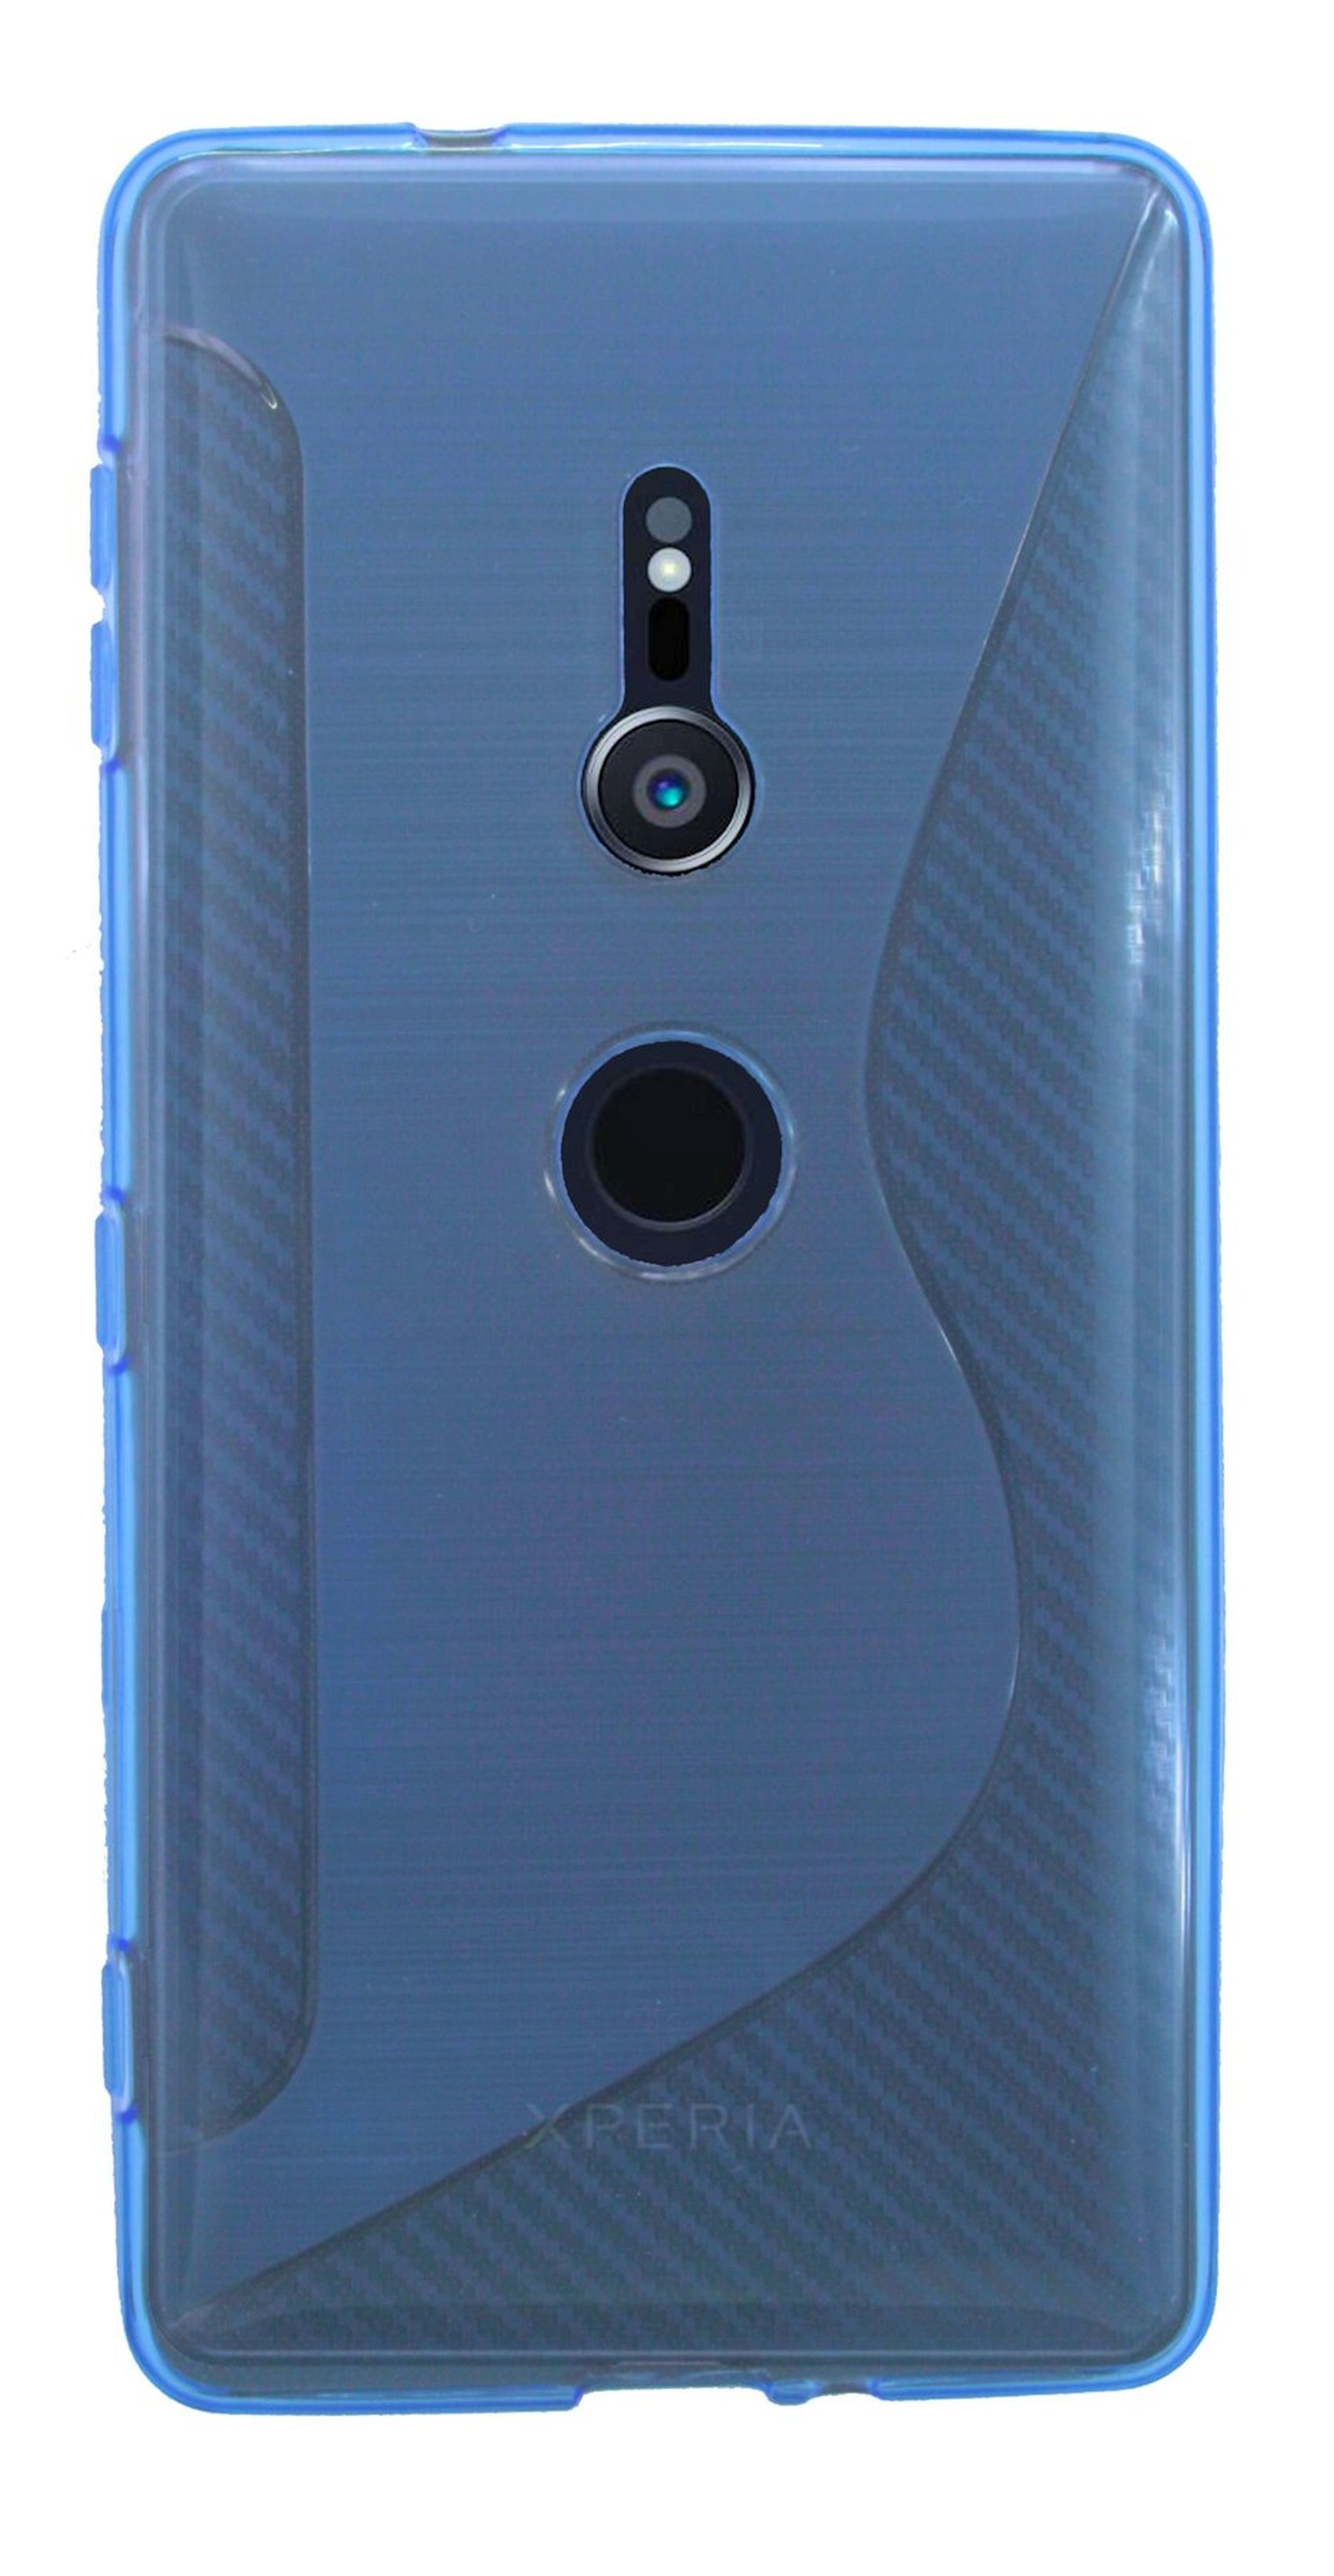 COFI Blau Sony, Bumper, Xperia XZ2, S-Line Cover,